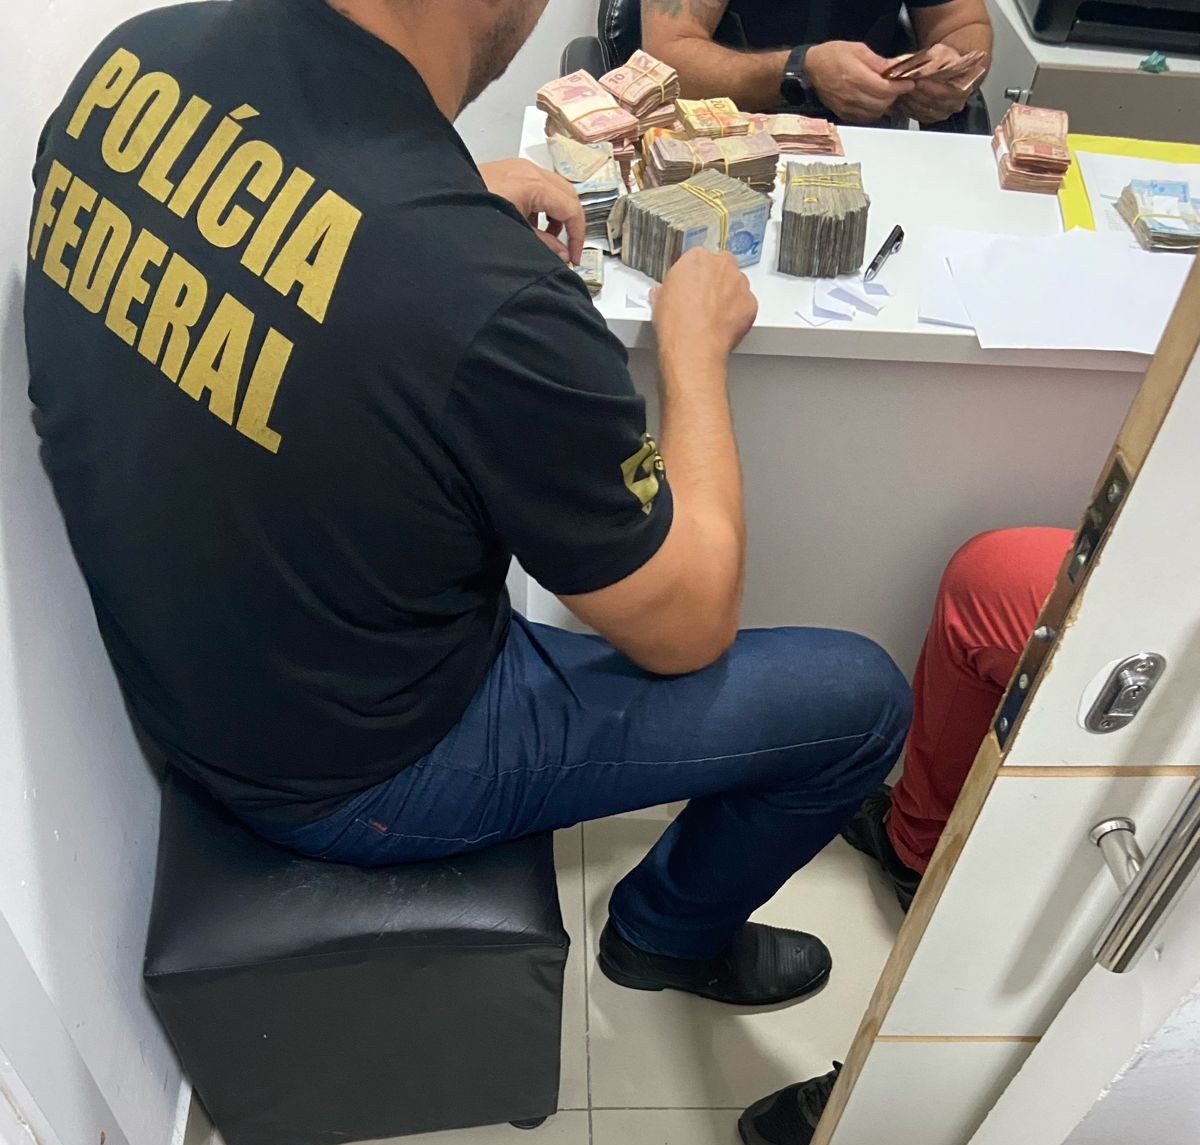 Polícia Federal cumpre mandados contra crimes de contrabando de eletrônicos e lavagem de dinheiro em lojas de Caruaru